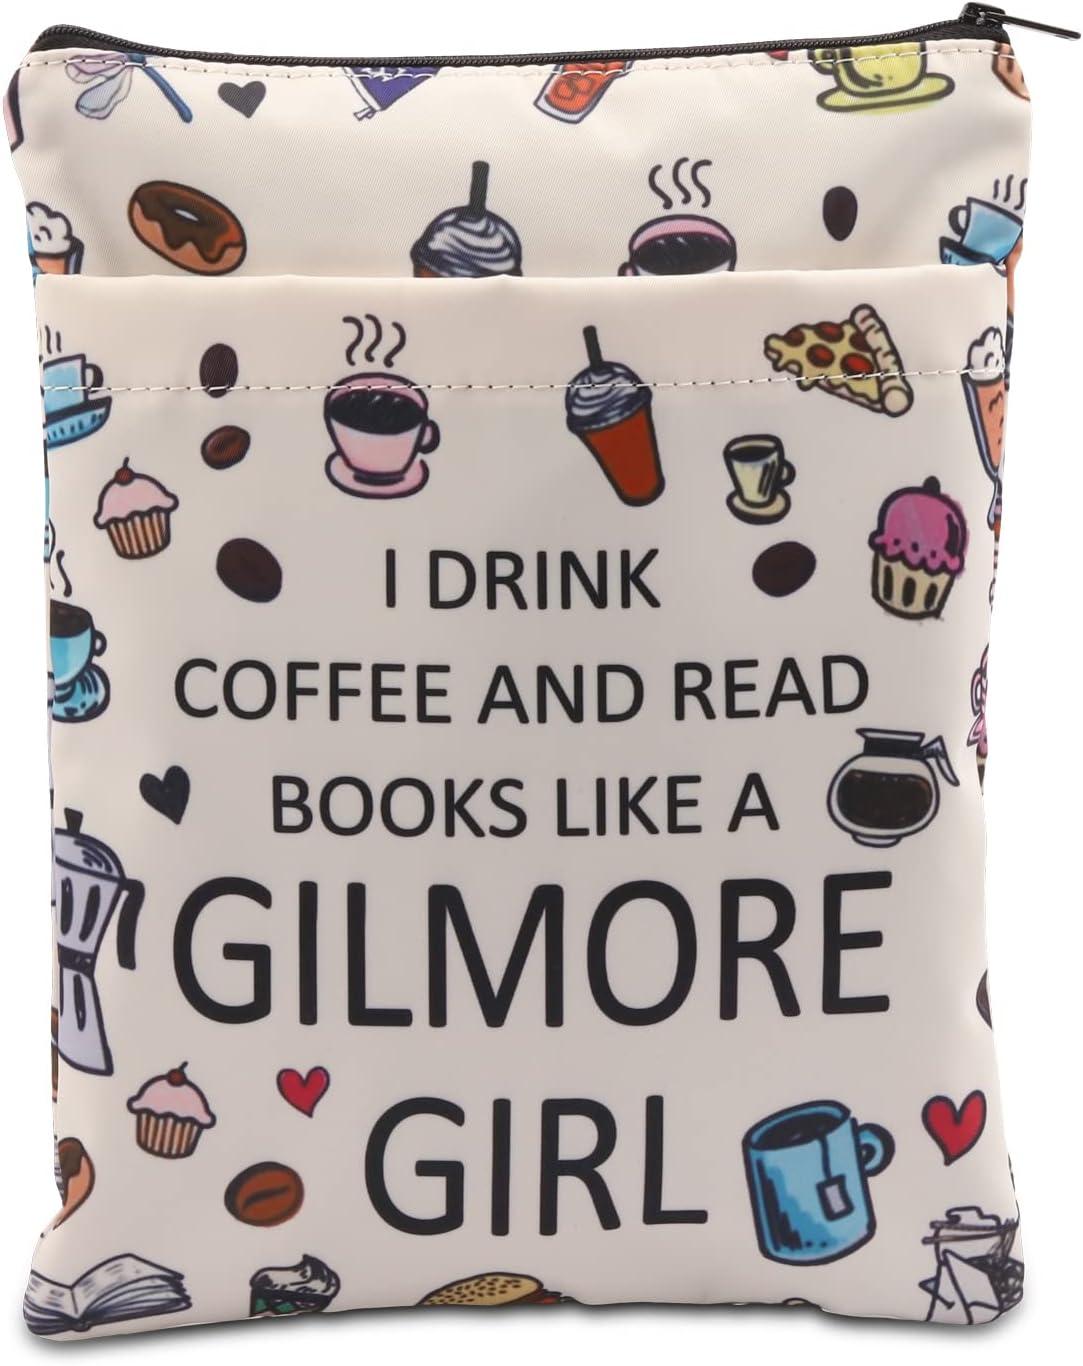 Et hvidt boghylster med kaffe og kager, hvor der står "Jeg drikker kaffe og læser bøger som en gilmore-pige"